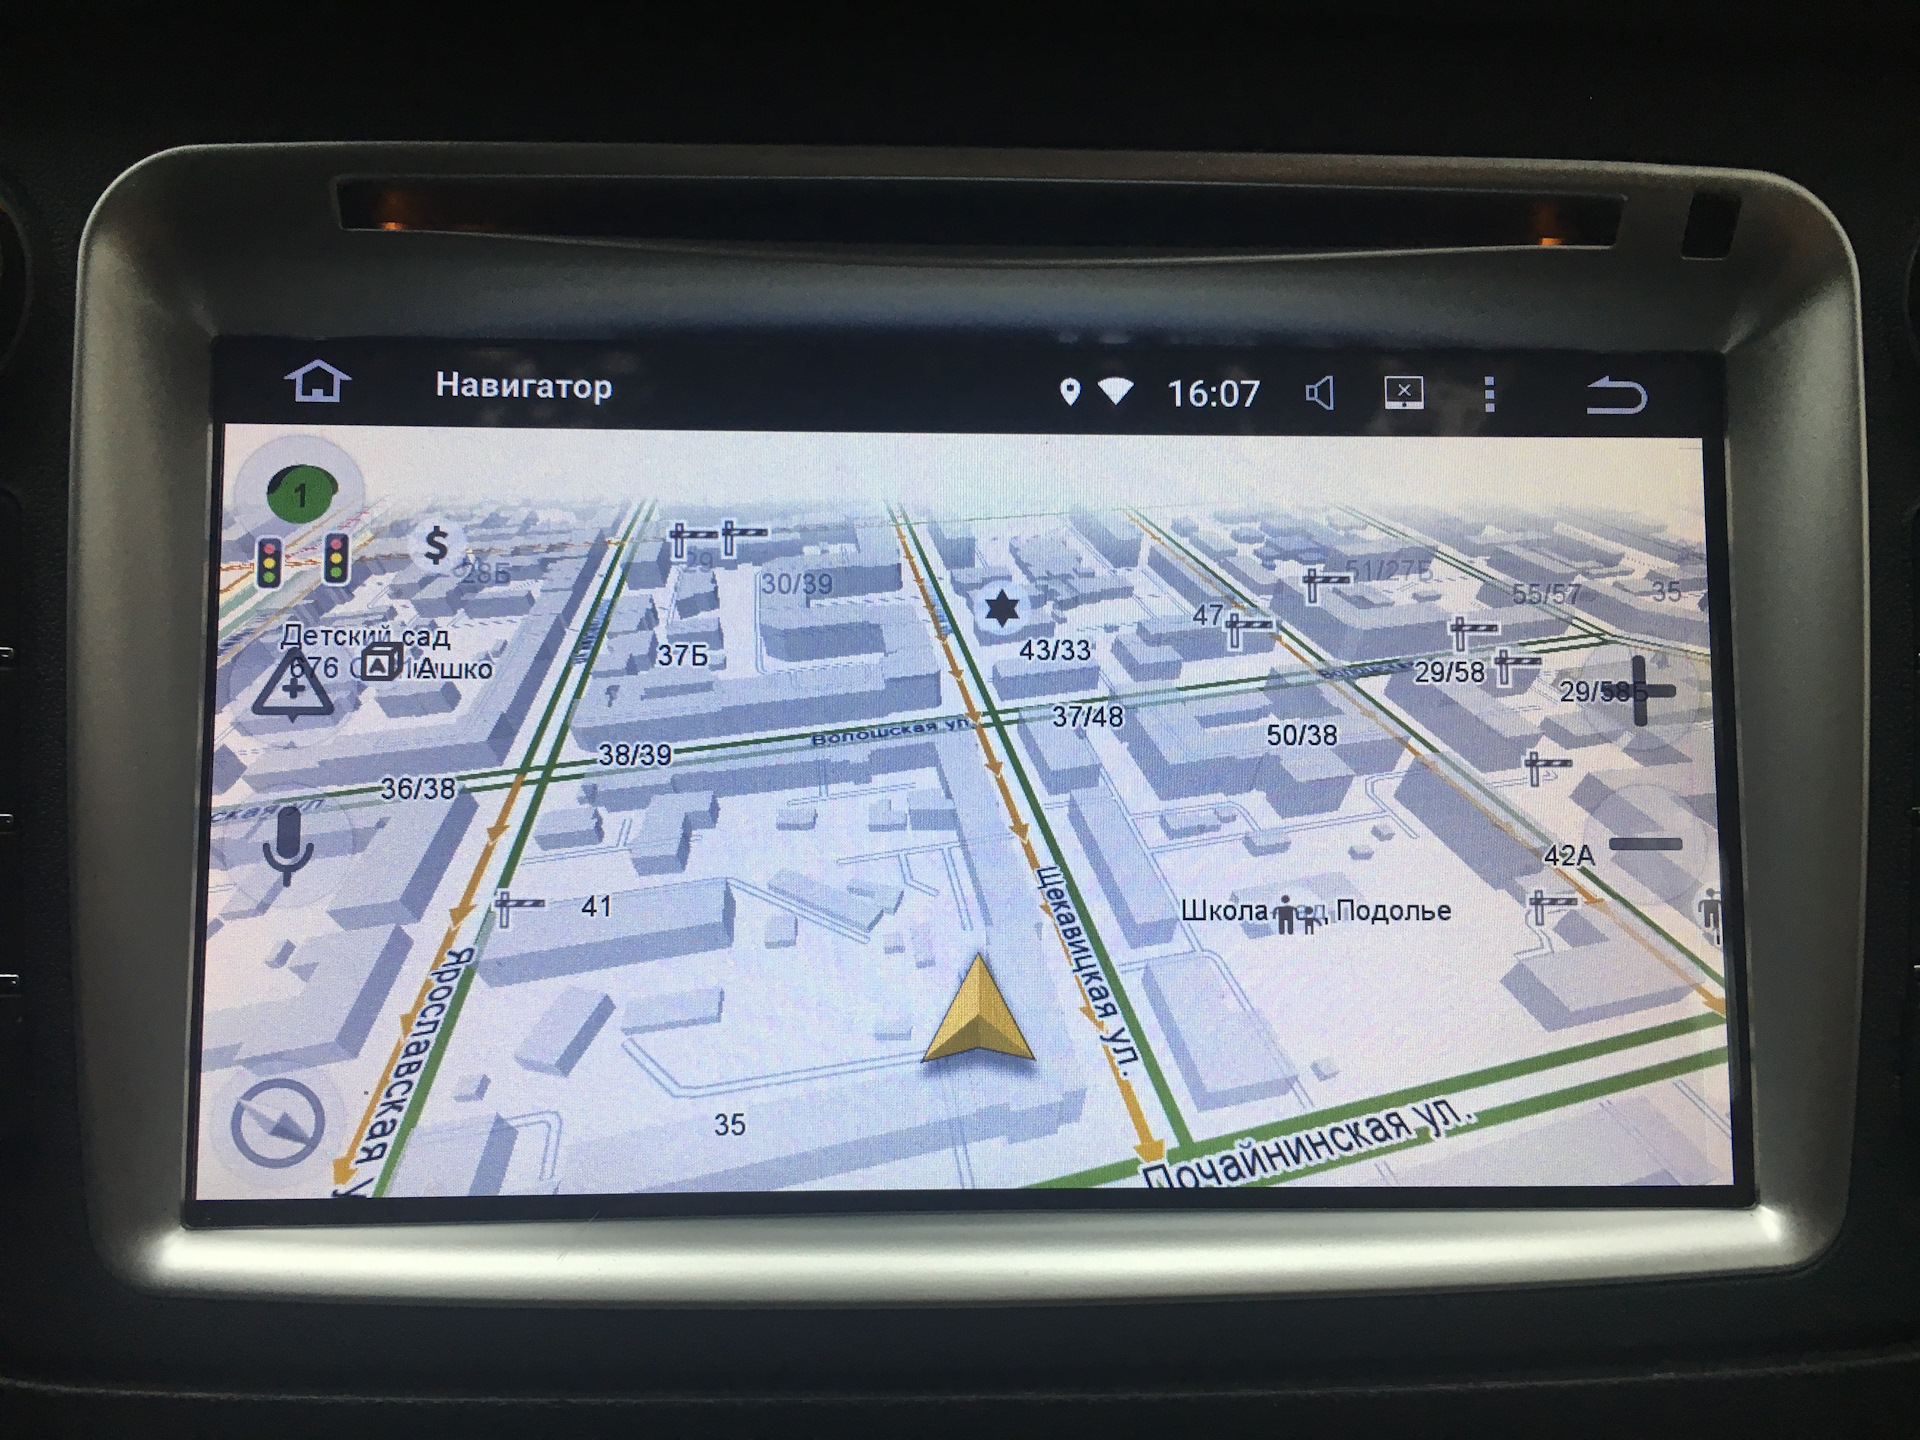 Включи навигатор 3. Навигатор в виде персонажа. Авто с навигацией самая первая. Мультимедиа Android 26pin.